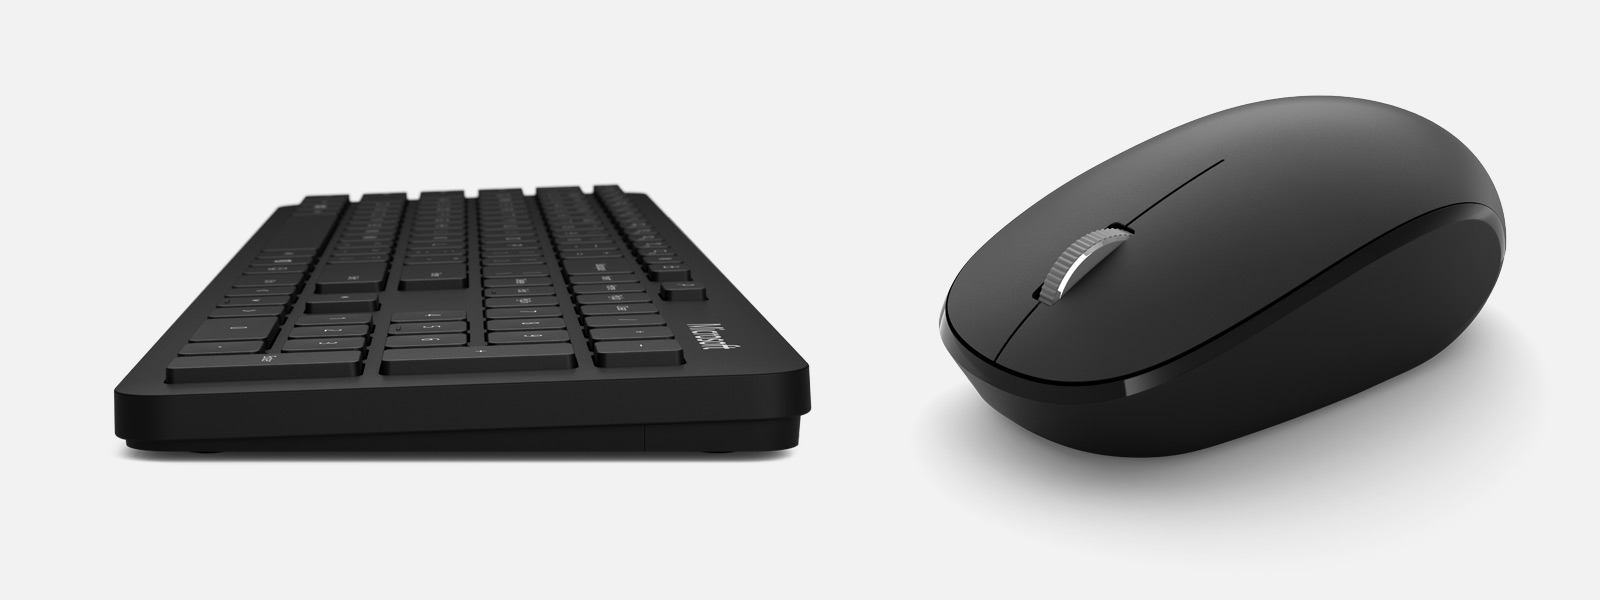 Kit tastatura + mouse Microsoft Desktop 1AI-00021